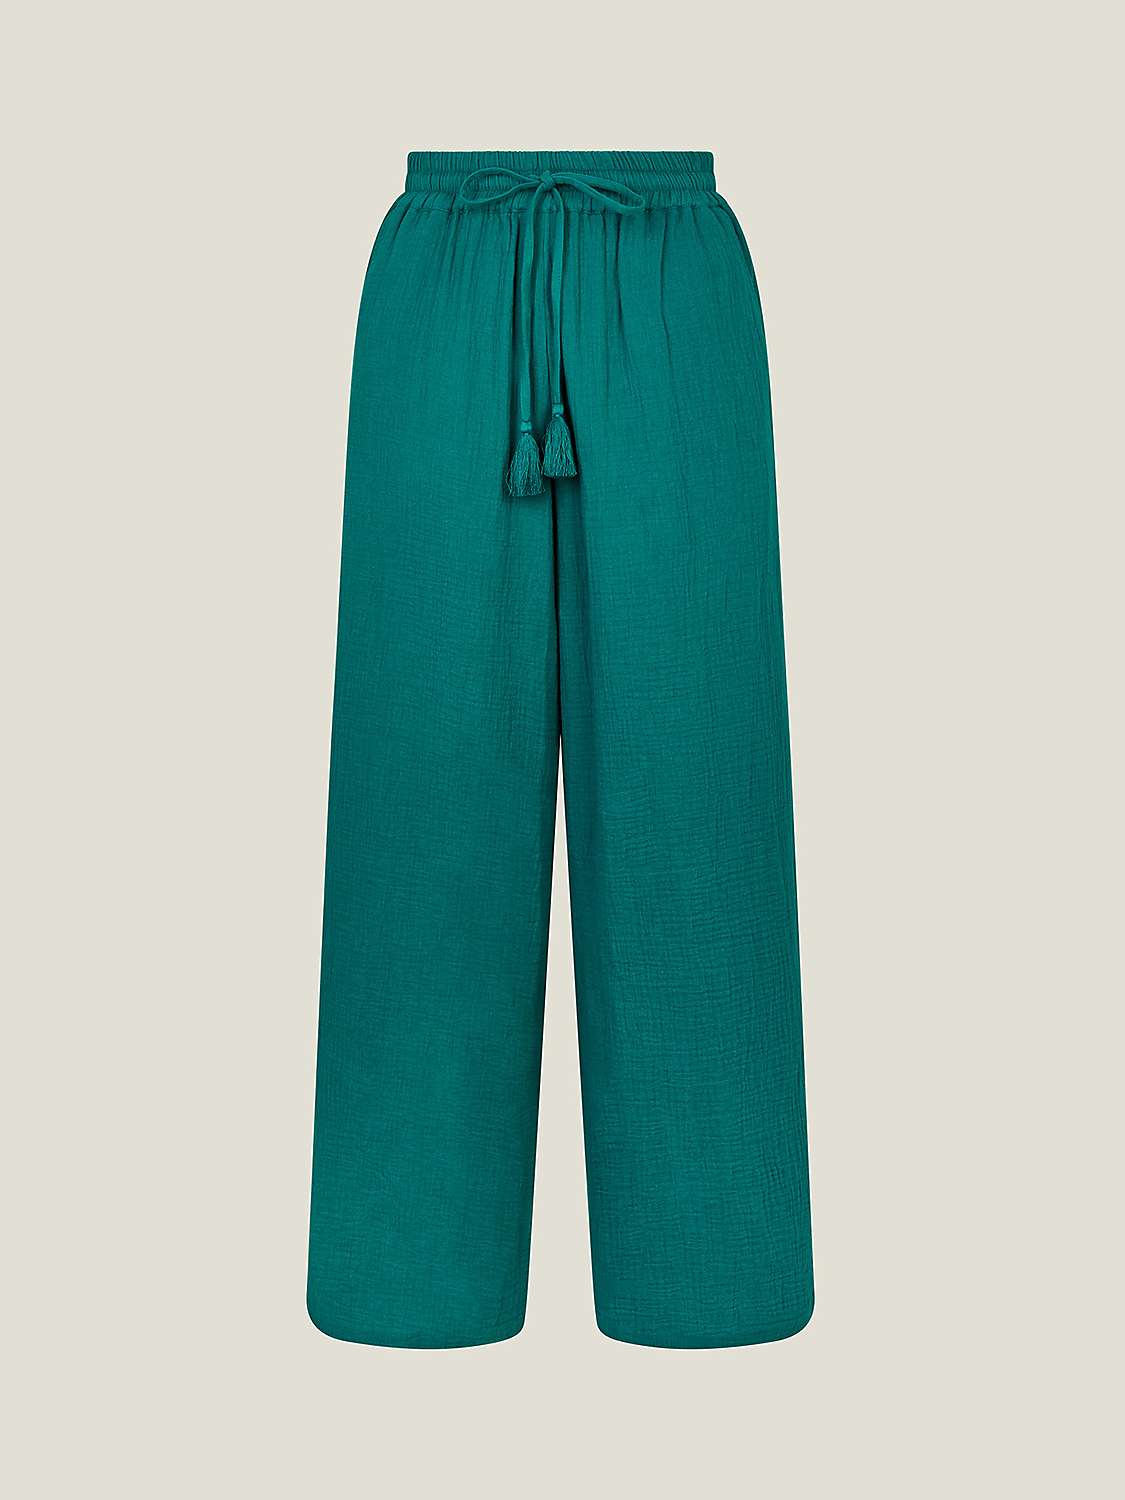 Buy Monsoon Crinkle Wide Leg Beach Trousers, Teal Online at johnlewis.com